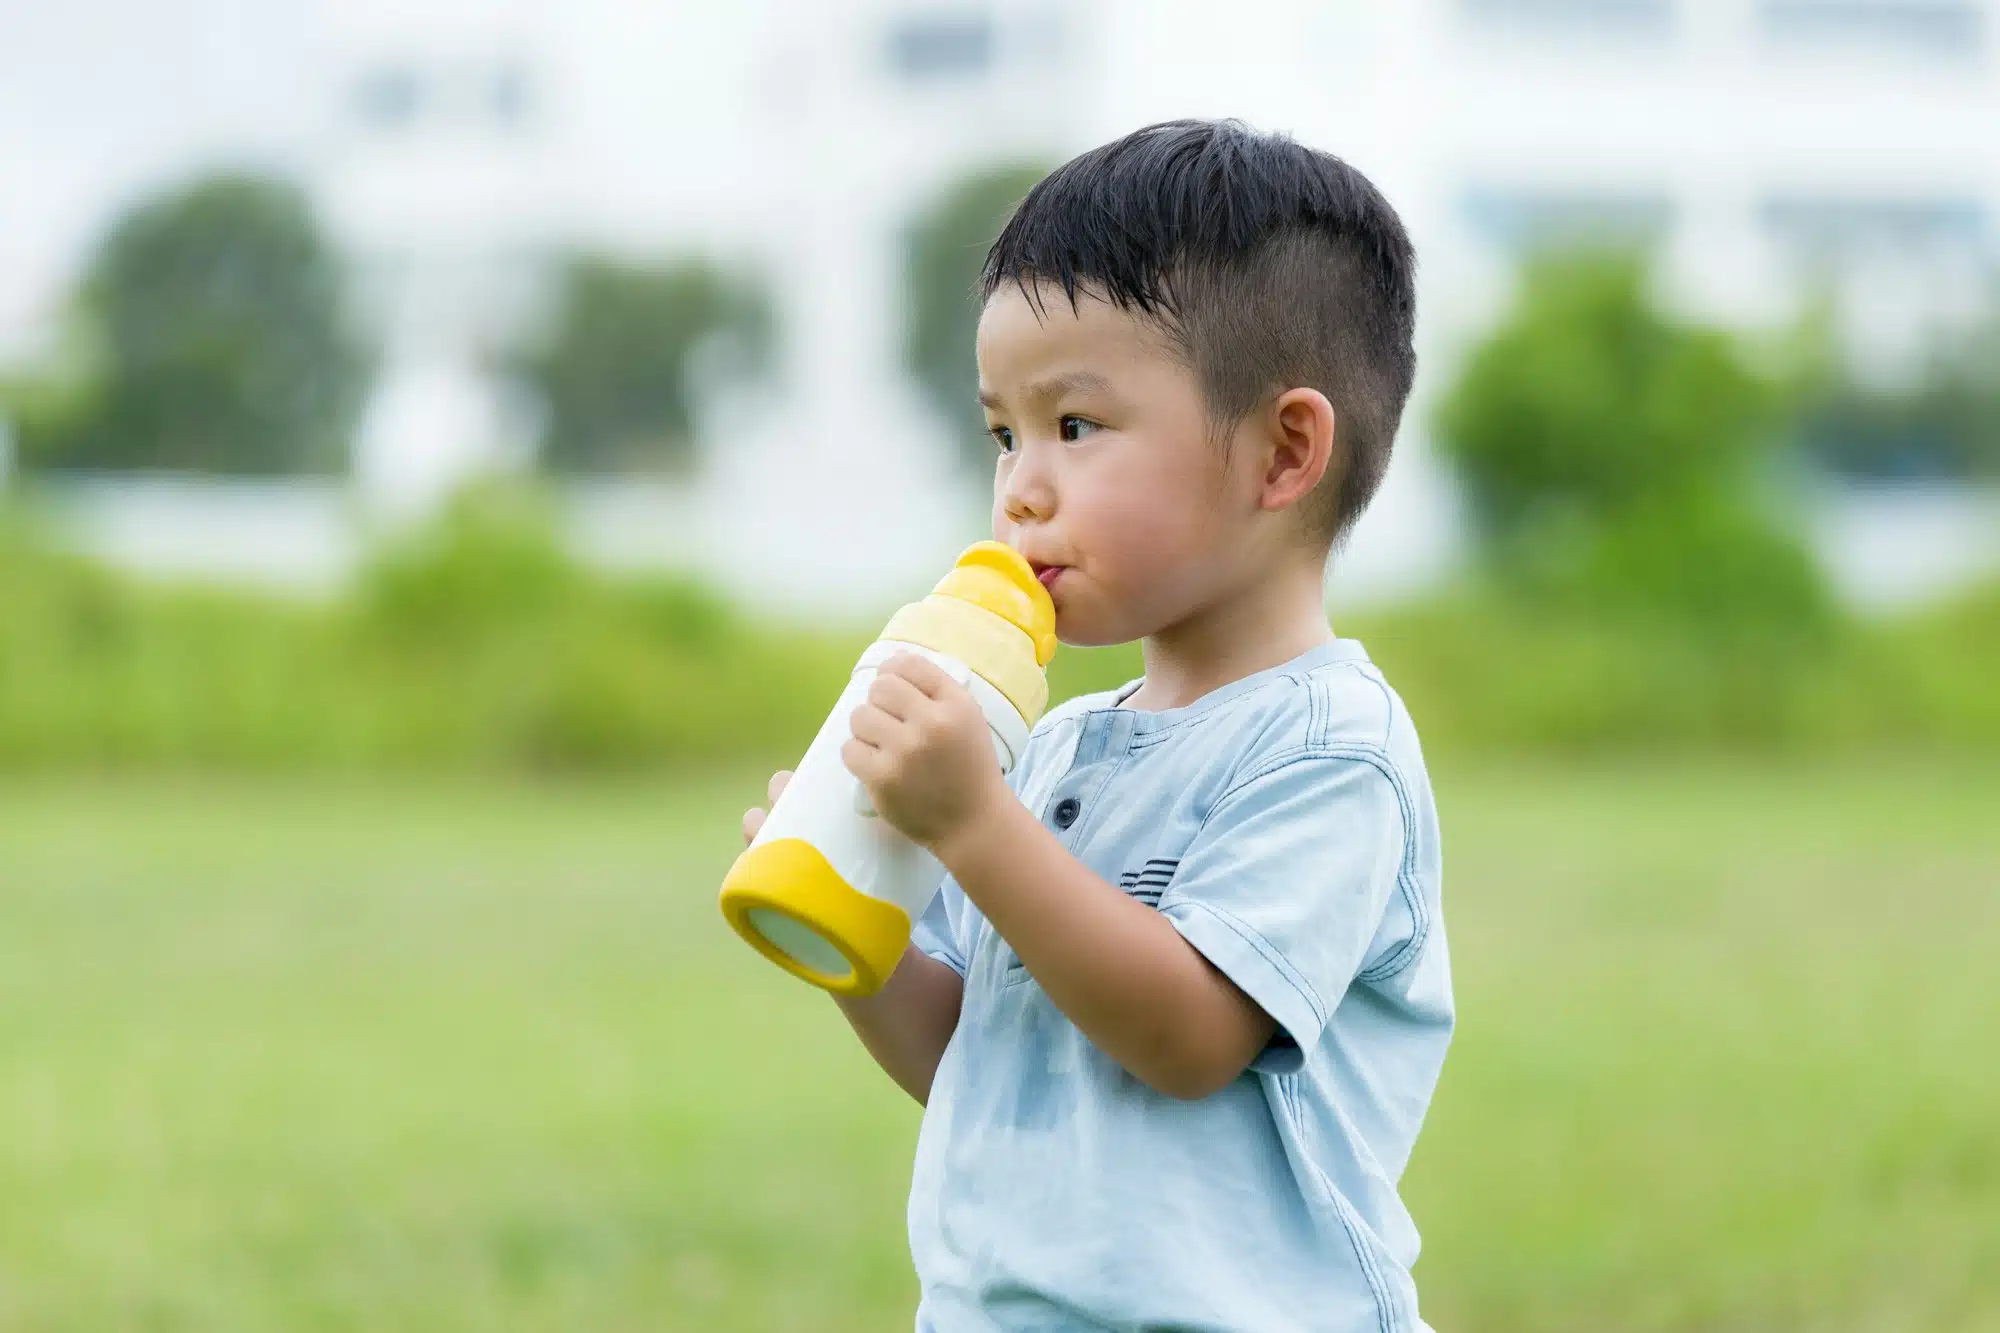 La gourde paille : L’outil idéal pour hydrater un enfant de 4 ans